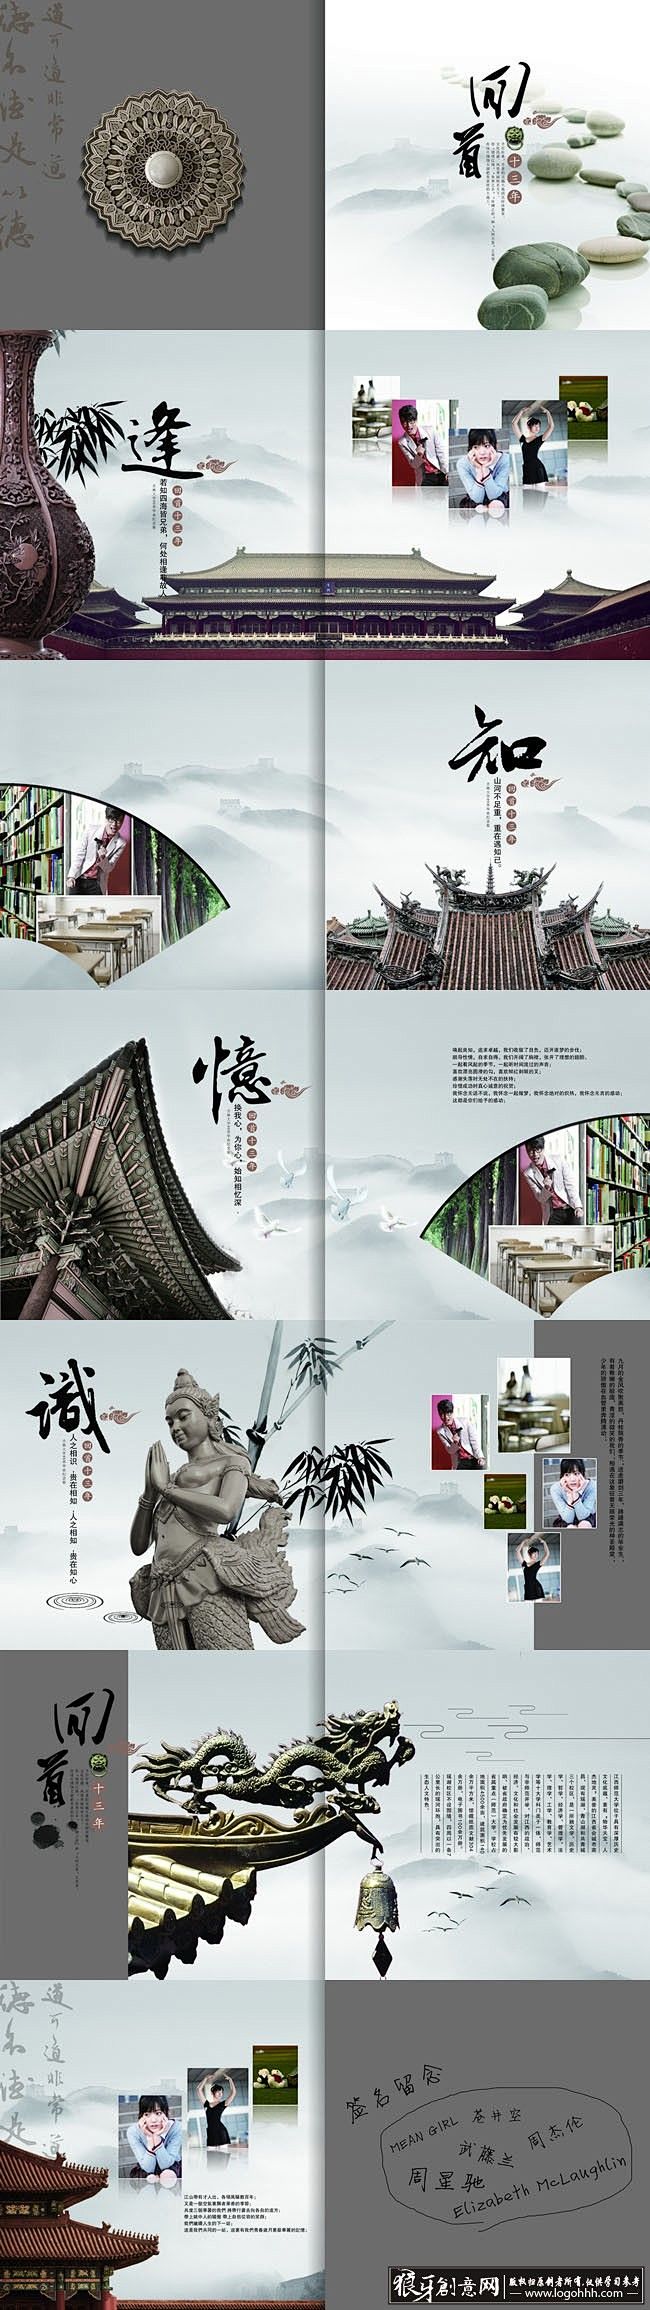 水墨画册设计中国风宣传册 中国传统文化 古代建筑房檐古典大气画册